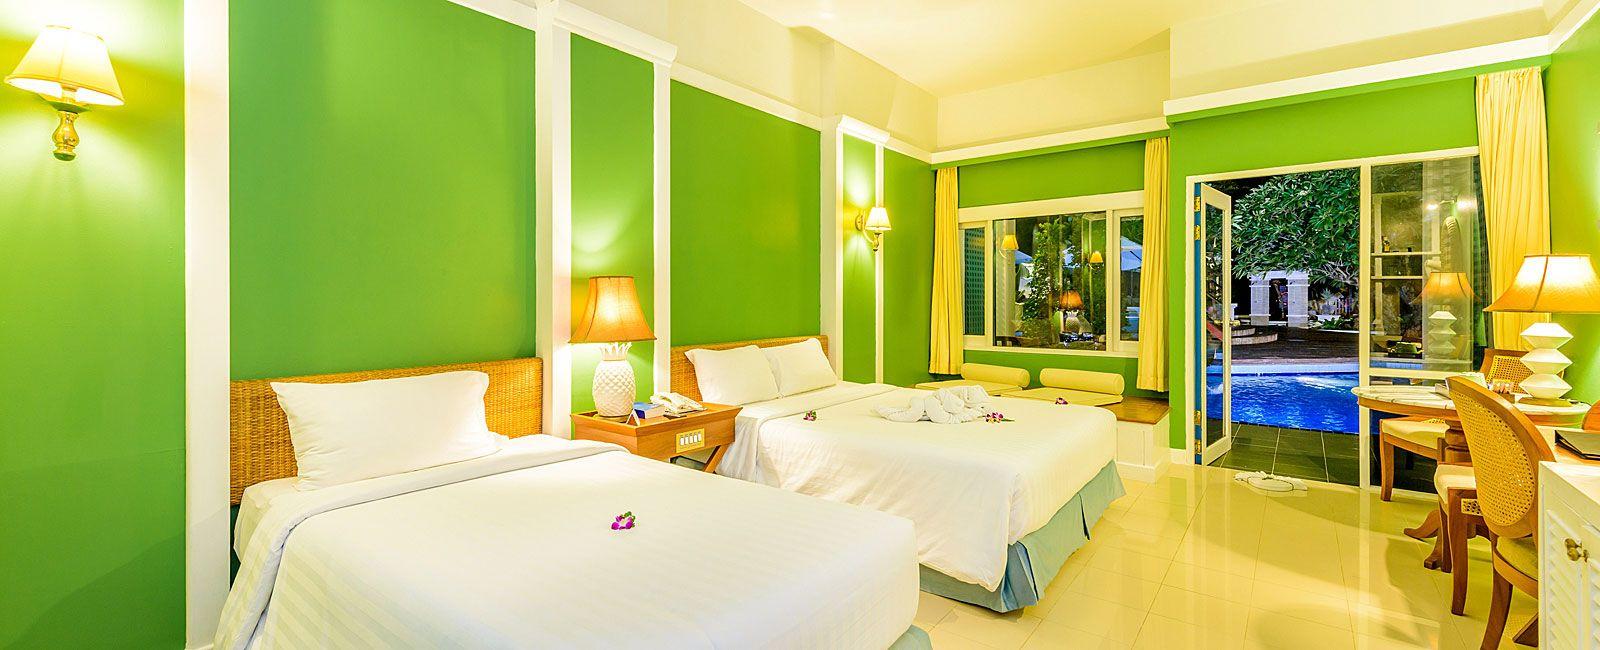 Yellow and Green Hotel Logo - Karon Beach Hotel | Rooms at Andaman Seaview Hotel | Phuket Hotels